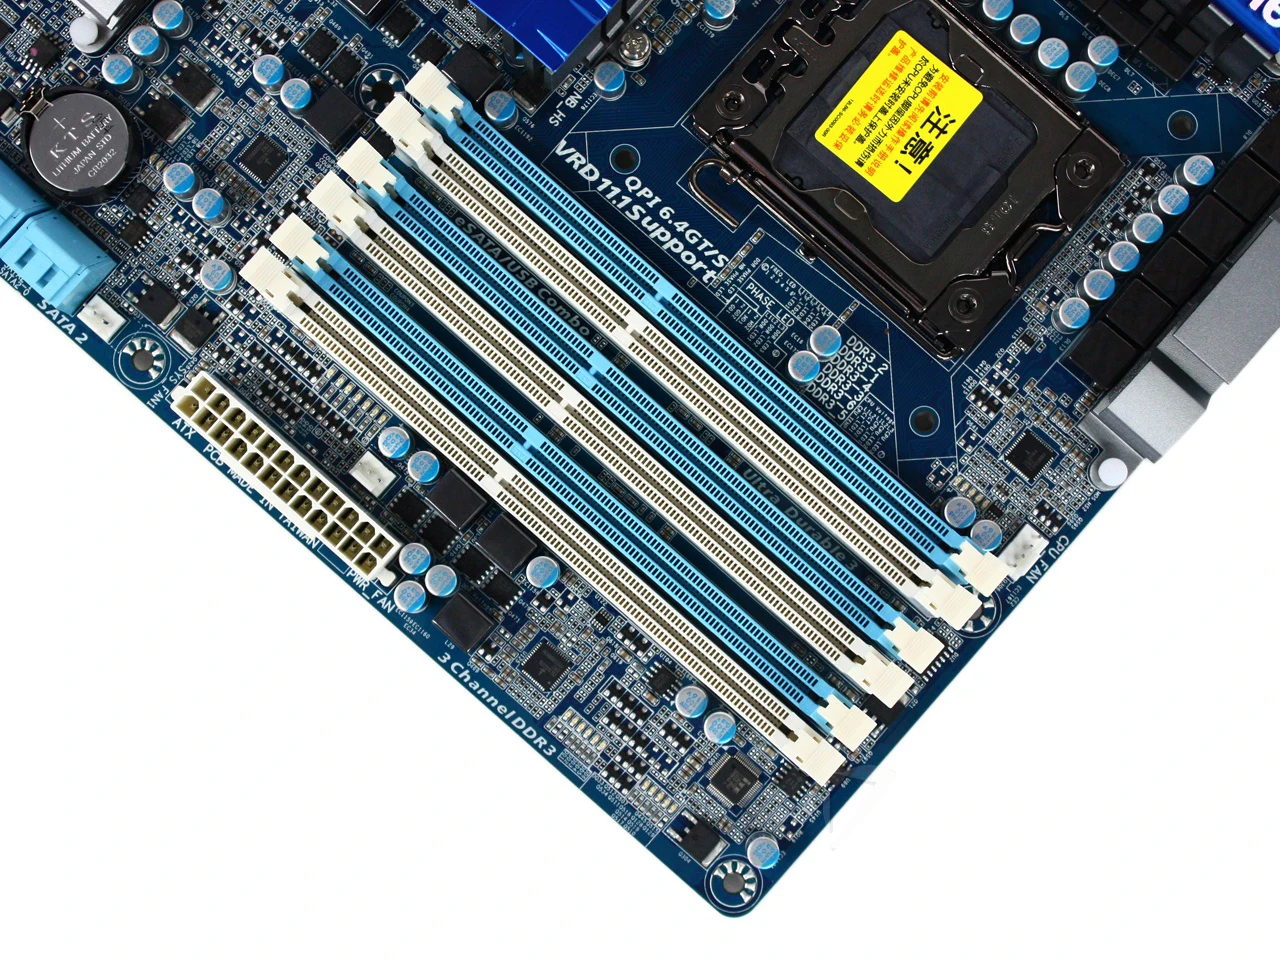 Материнская плата Gigabyte GA-X58A-UD3R для Intel X58 DDR3 USB3.0 24GB SATA III LGA 1366 X58A UD3R настольная системная плата